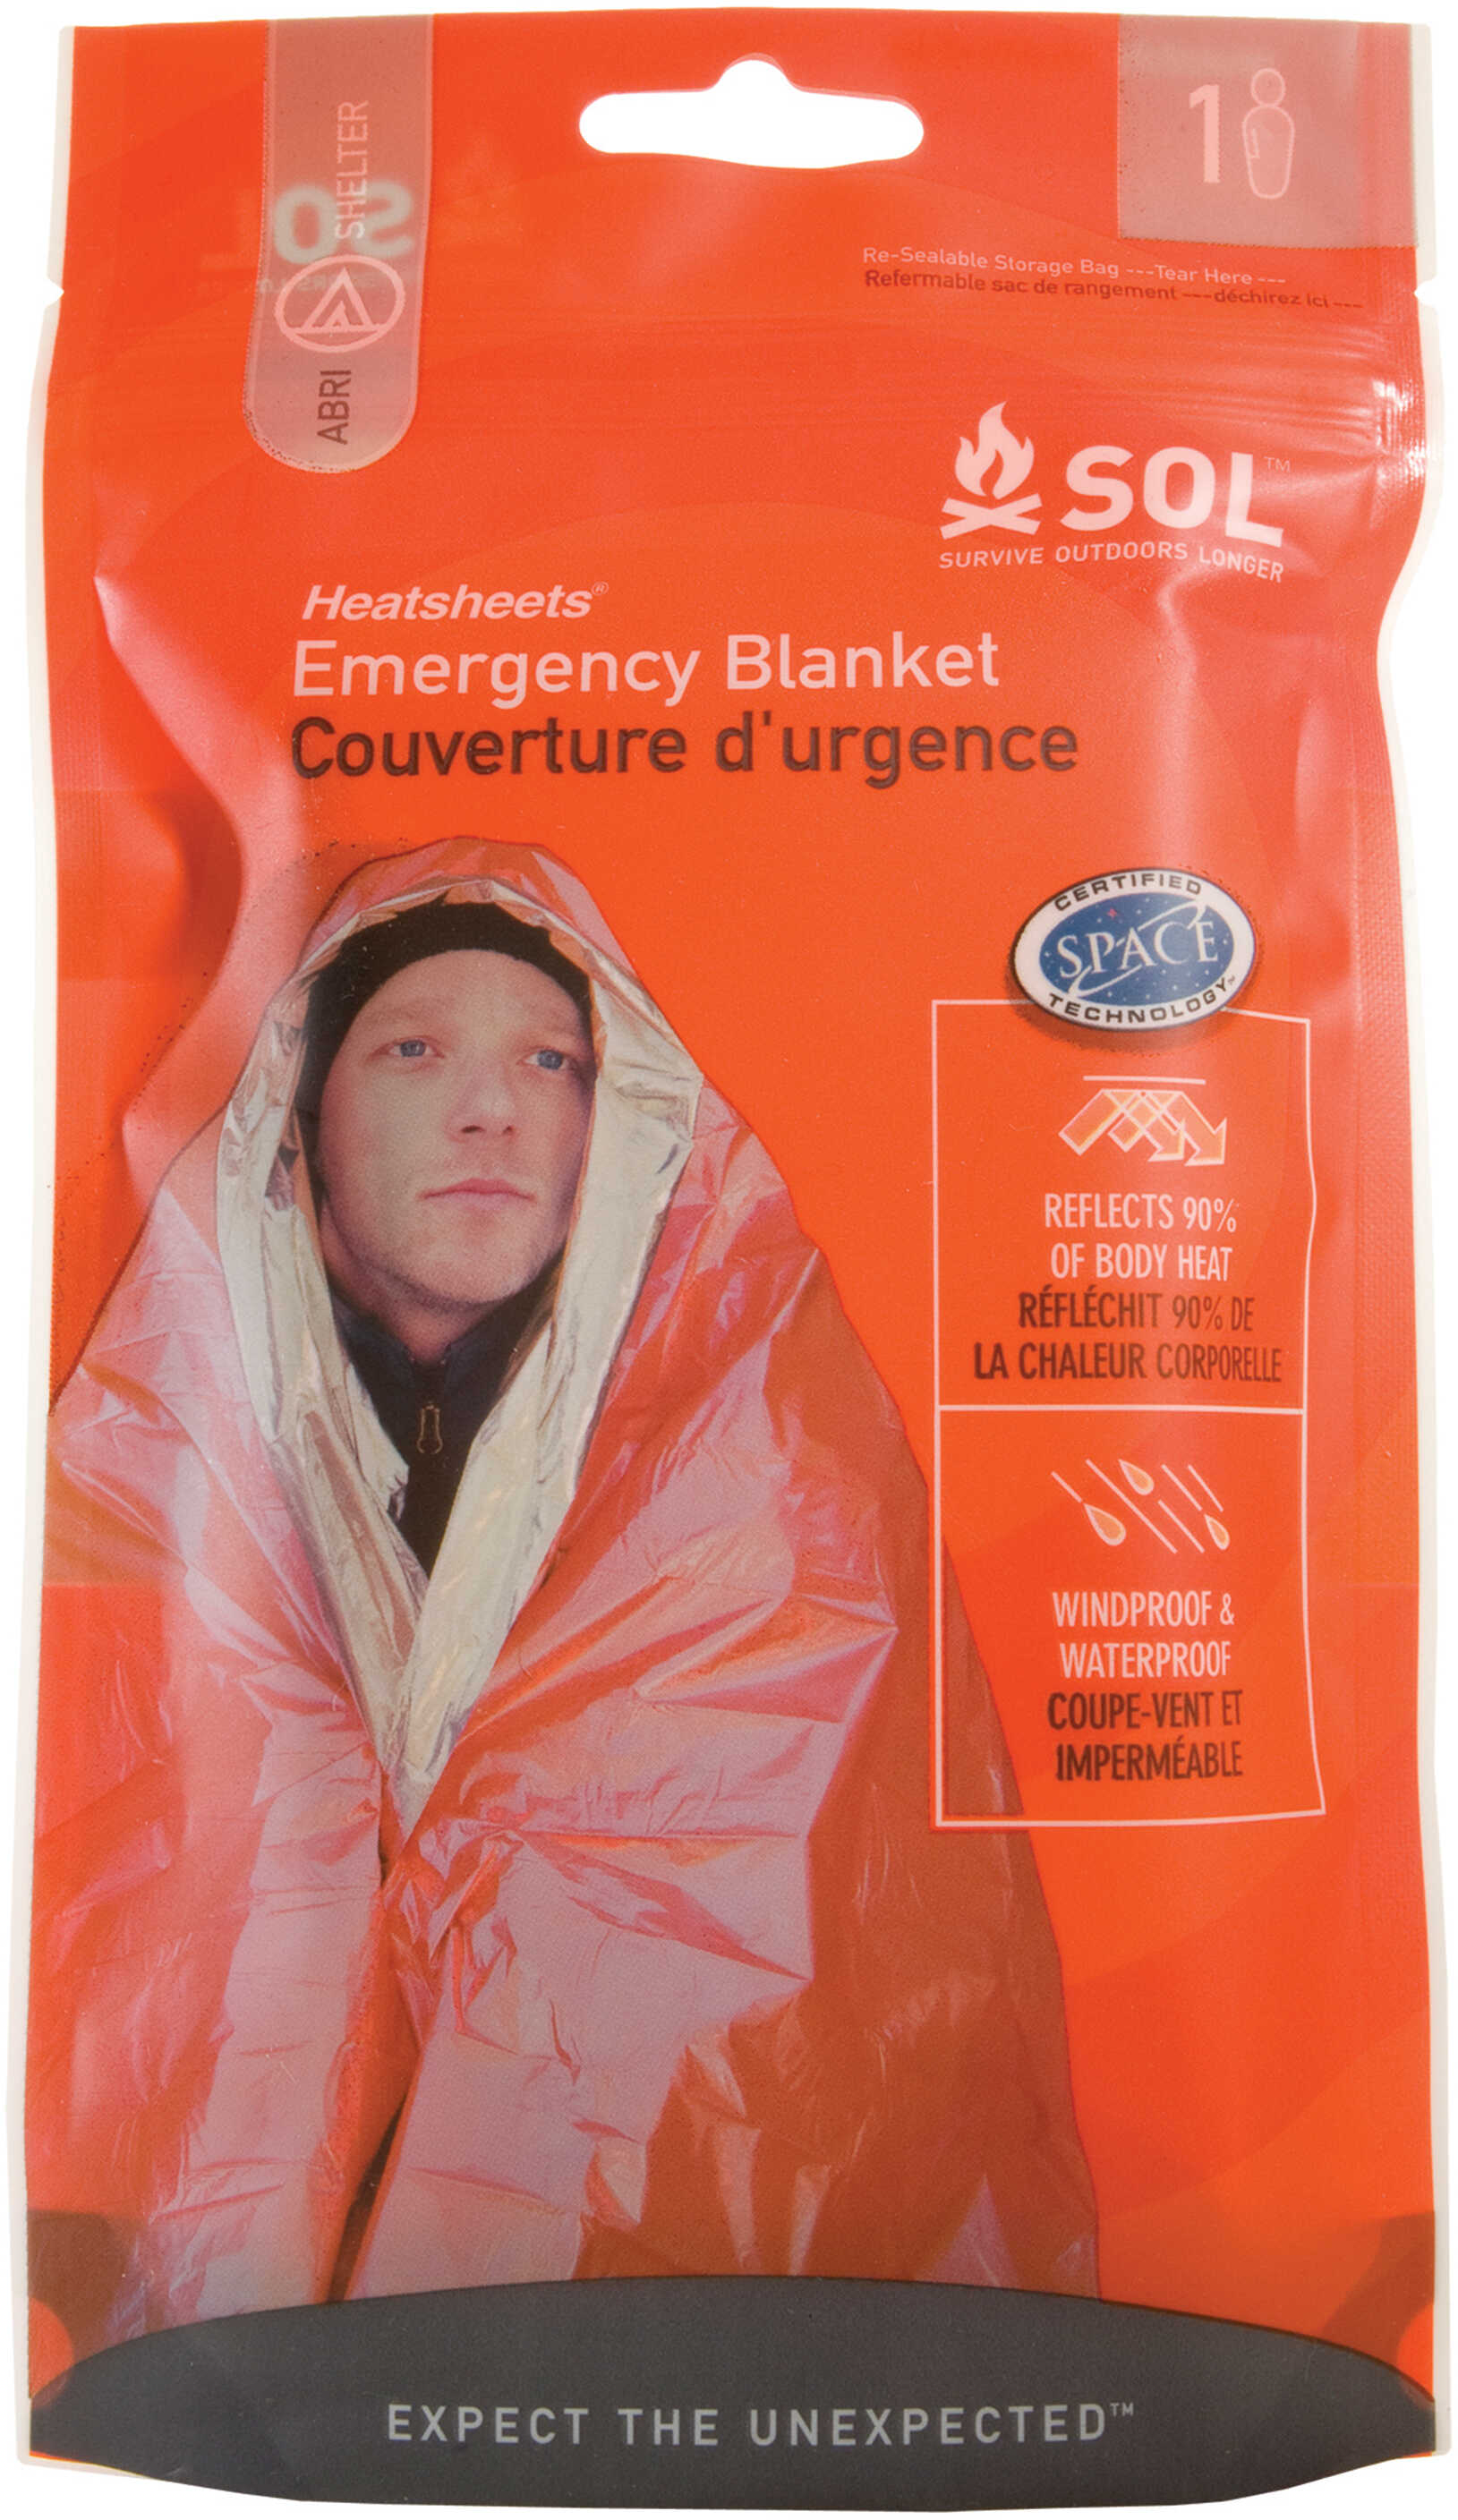 Survive Outdoors Longer / Tender Corp Adventure Medical SOL Series Emergency Blanket 0140-1222